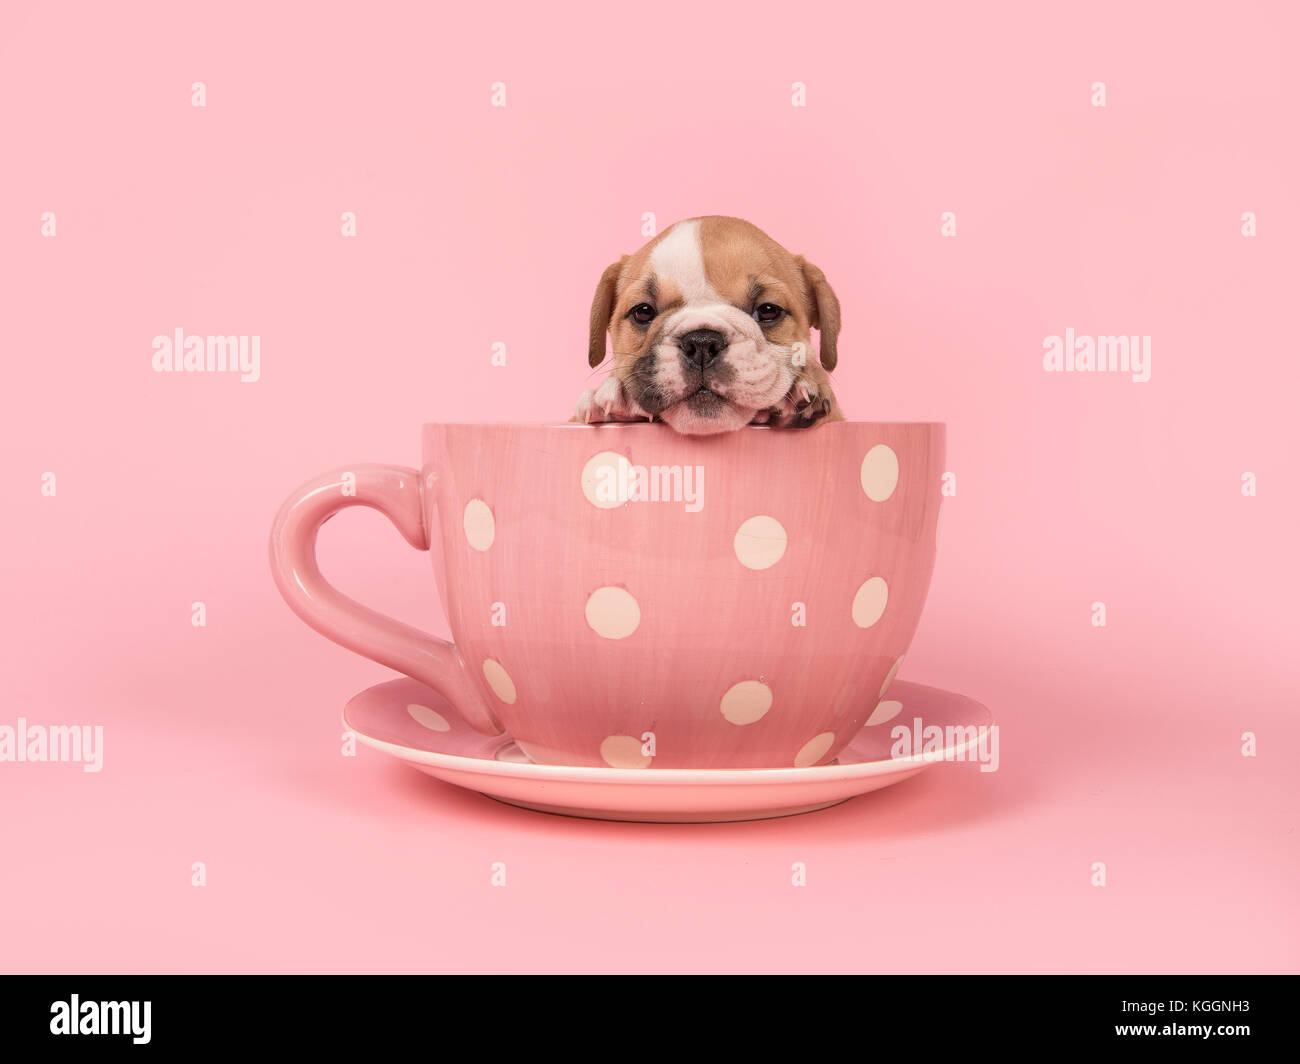 Englisch Bulldogge Welpen vor der Kamera hängen über den Rand eines rosa und weiß gepunktete Tasse und Untertasse auf einem rosa Hintergrund Stockfoto